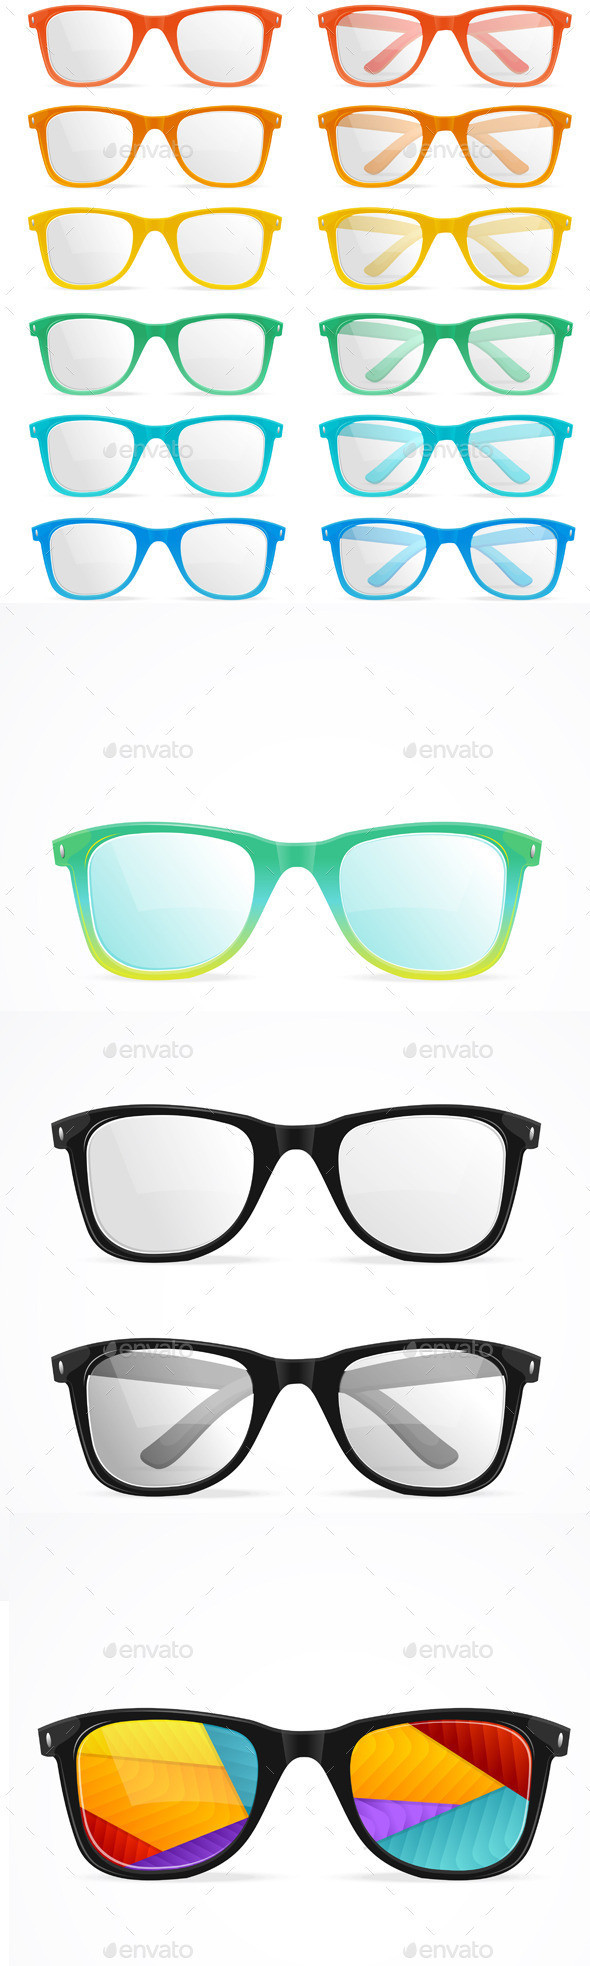 Glasses 590